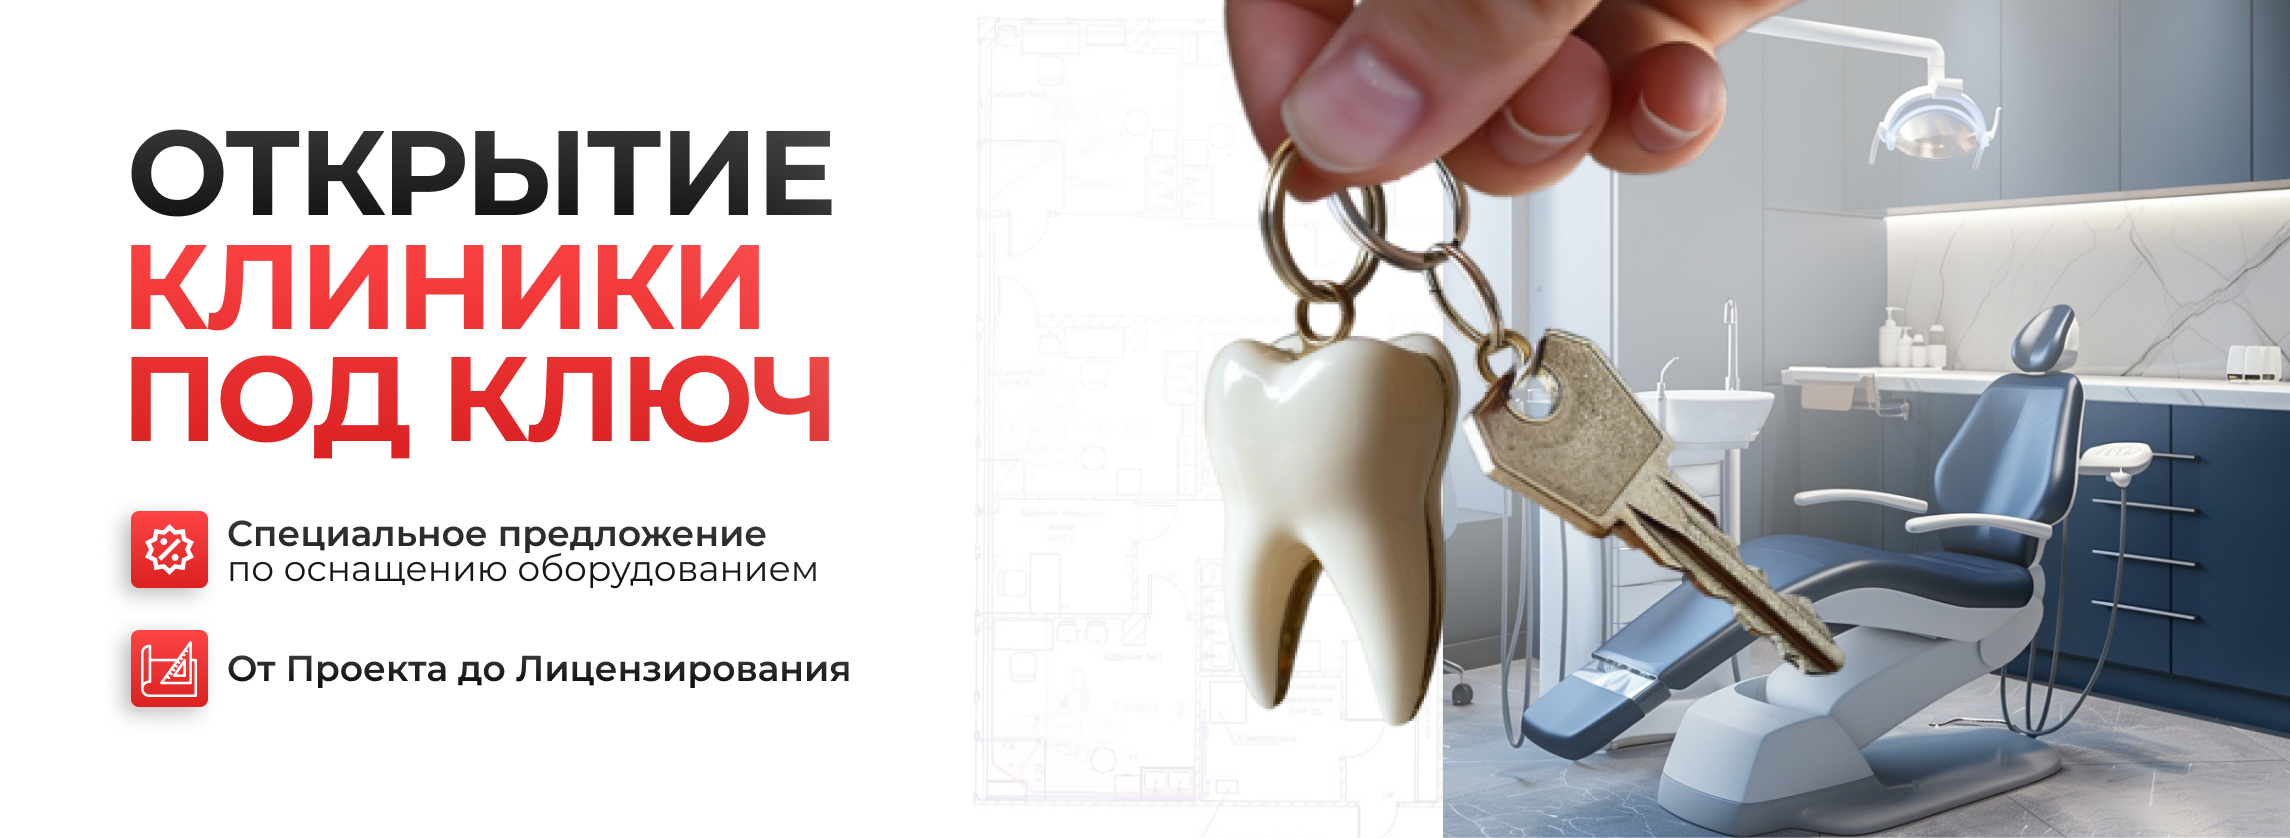 Открытие стоматологических клиник